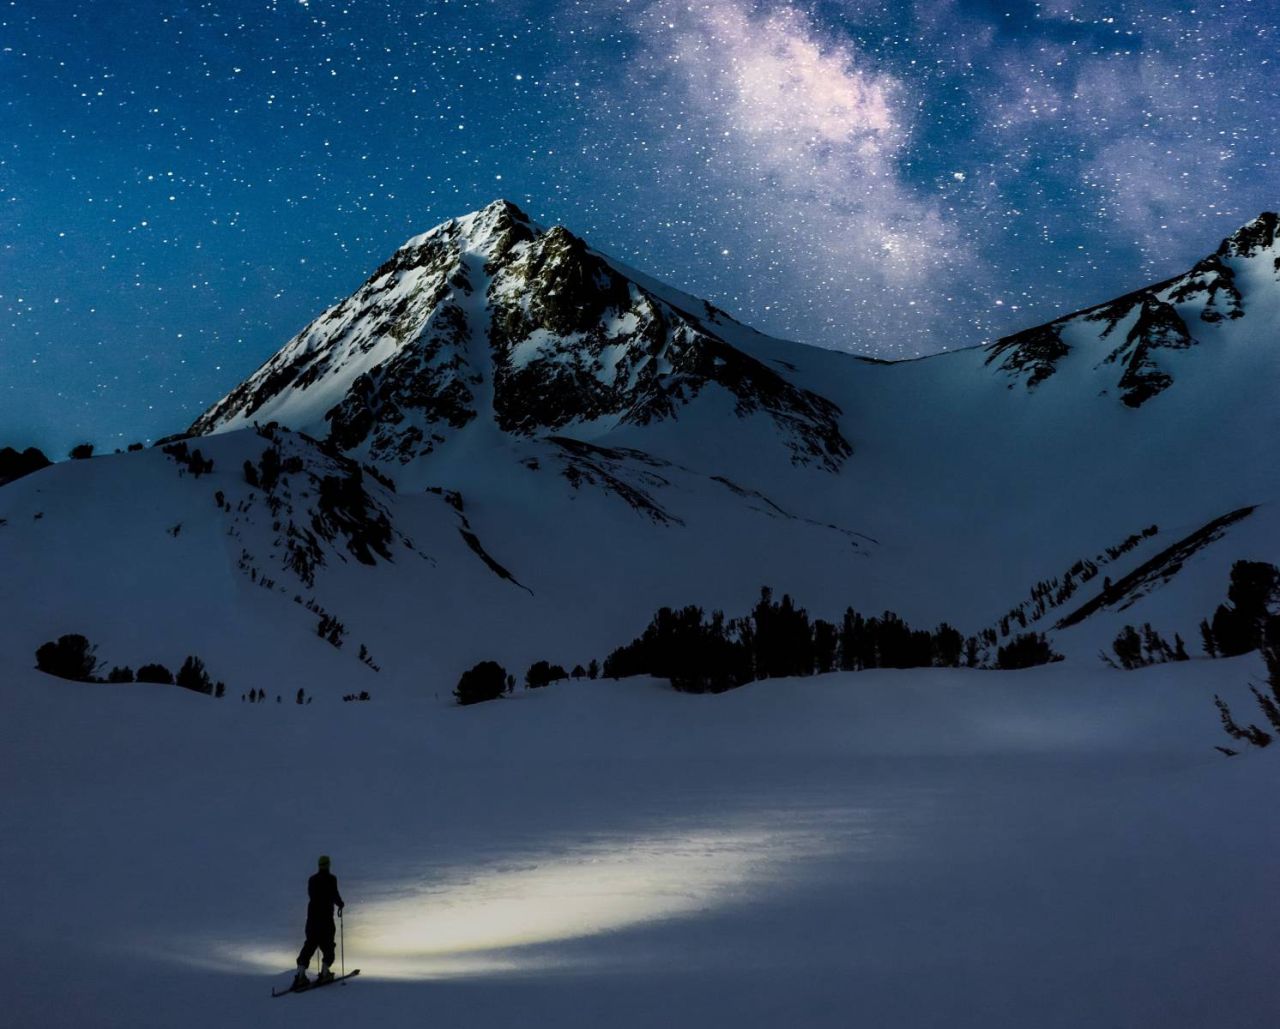 Skitour-bei-Nacht-mit-SternenhimmelQkQKqHHUMTmRa